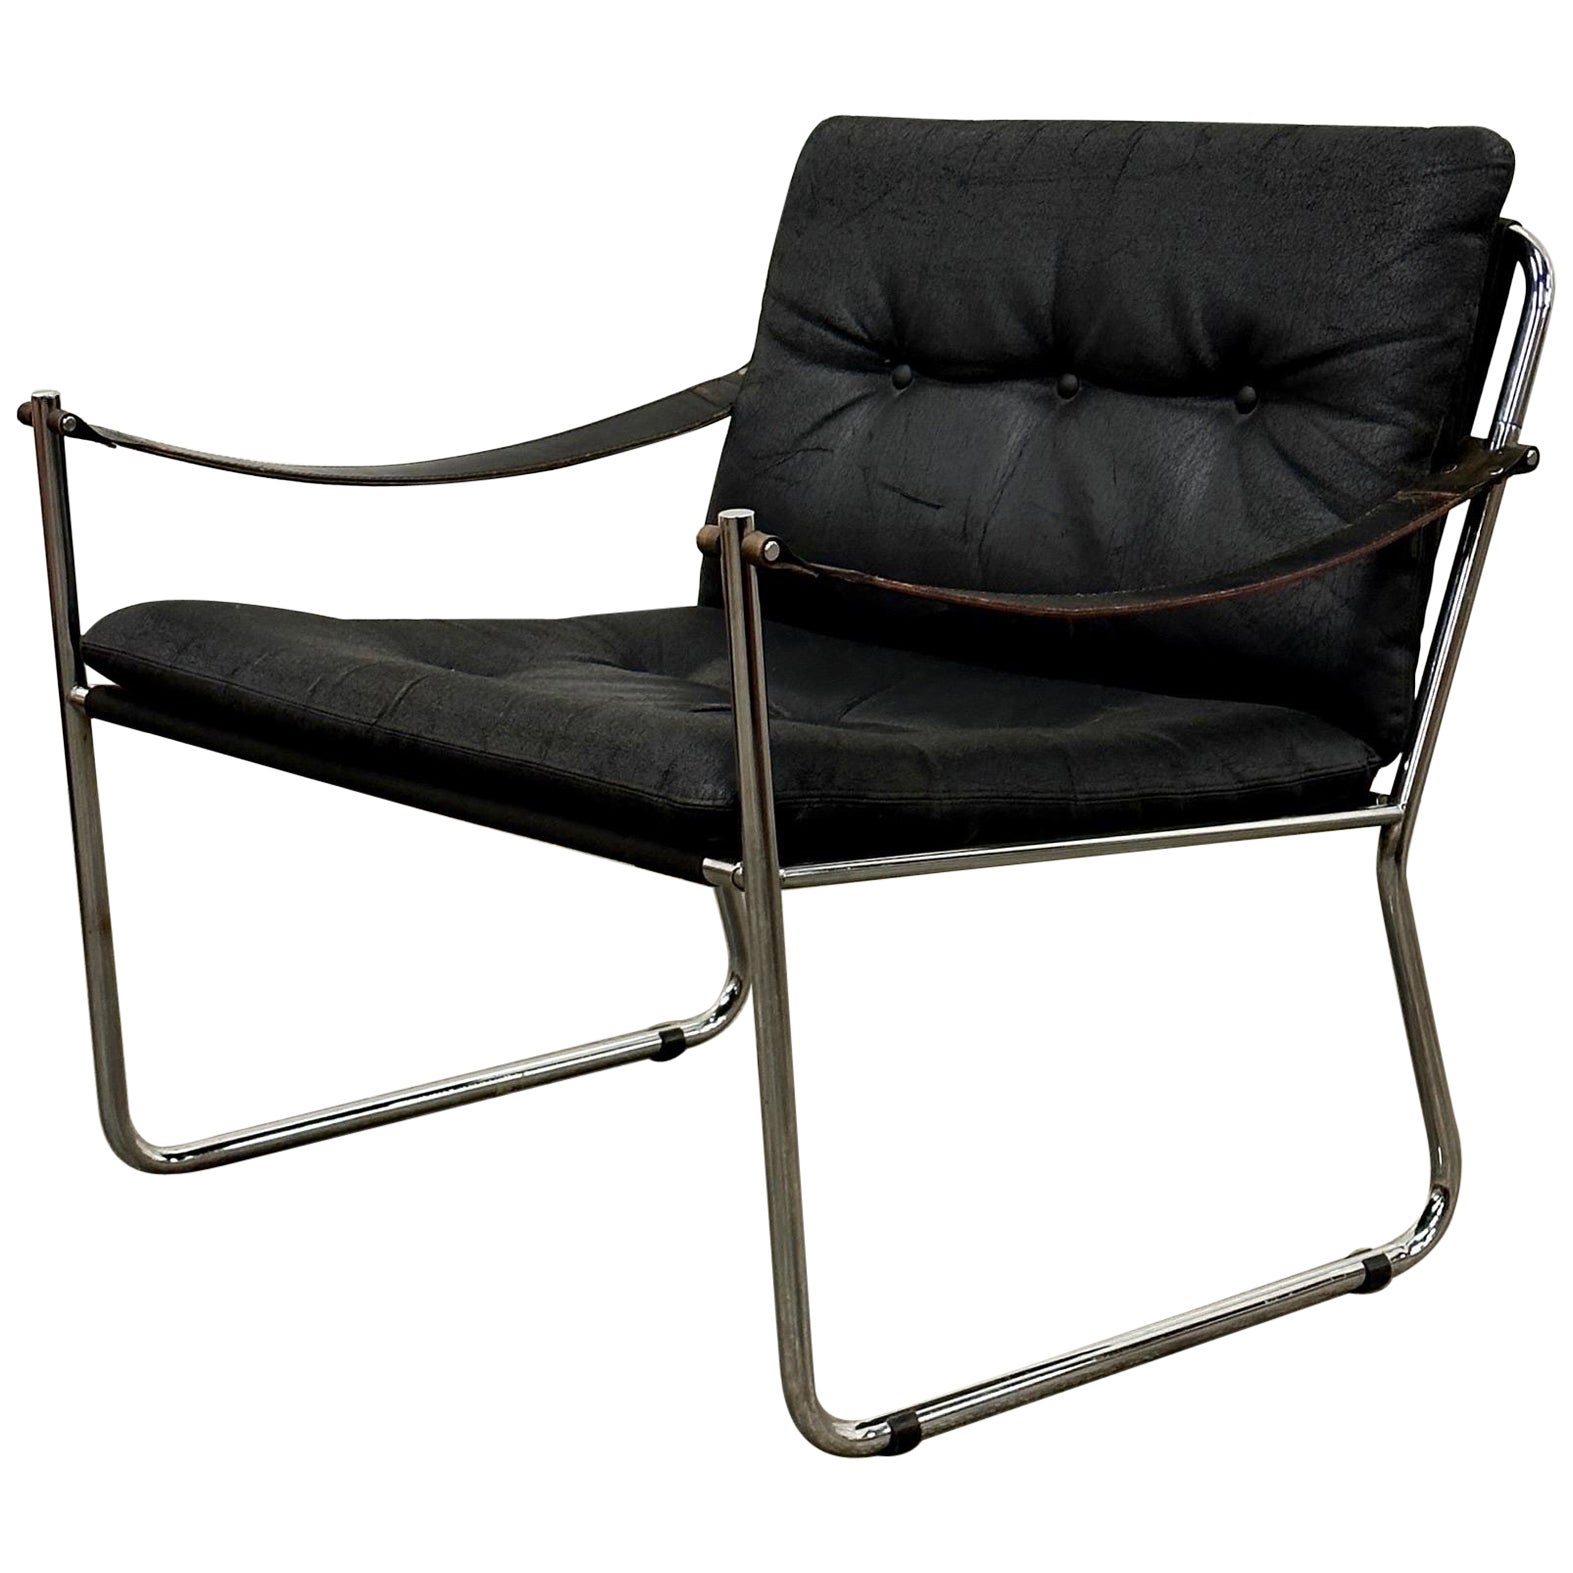 Karin Mobring Lounge Chairs